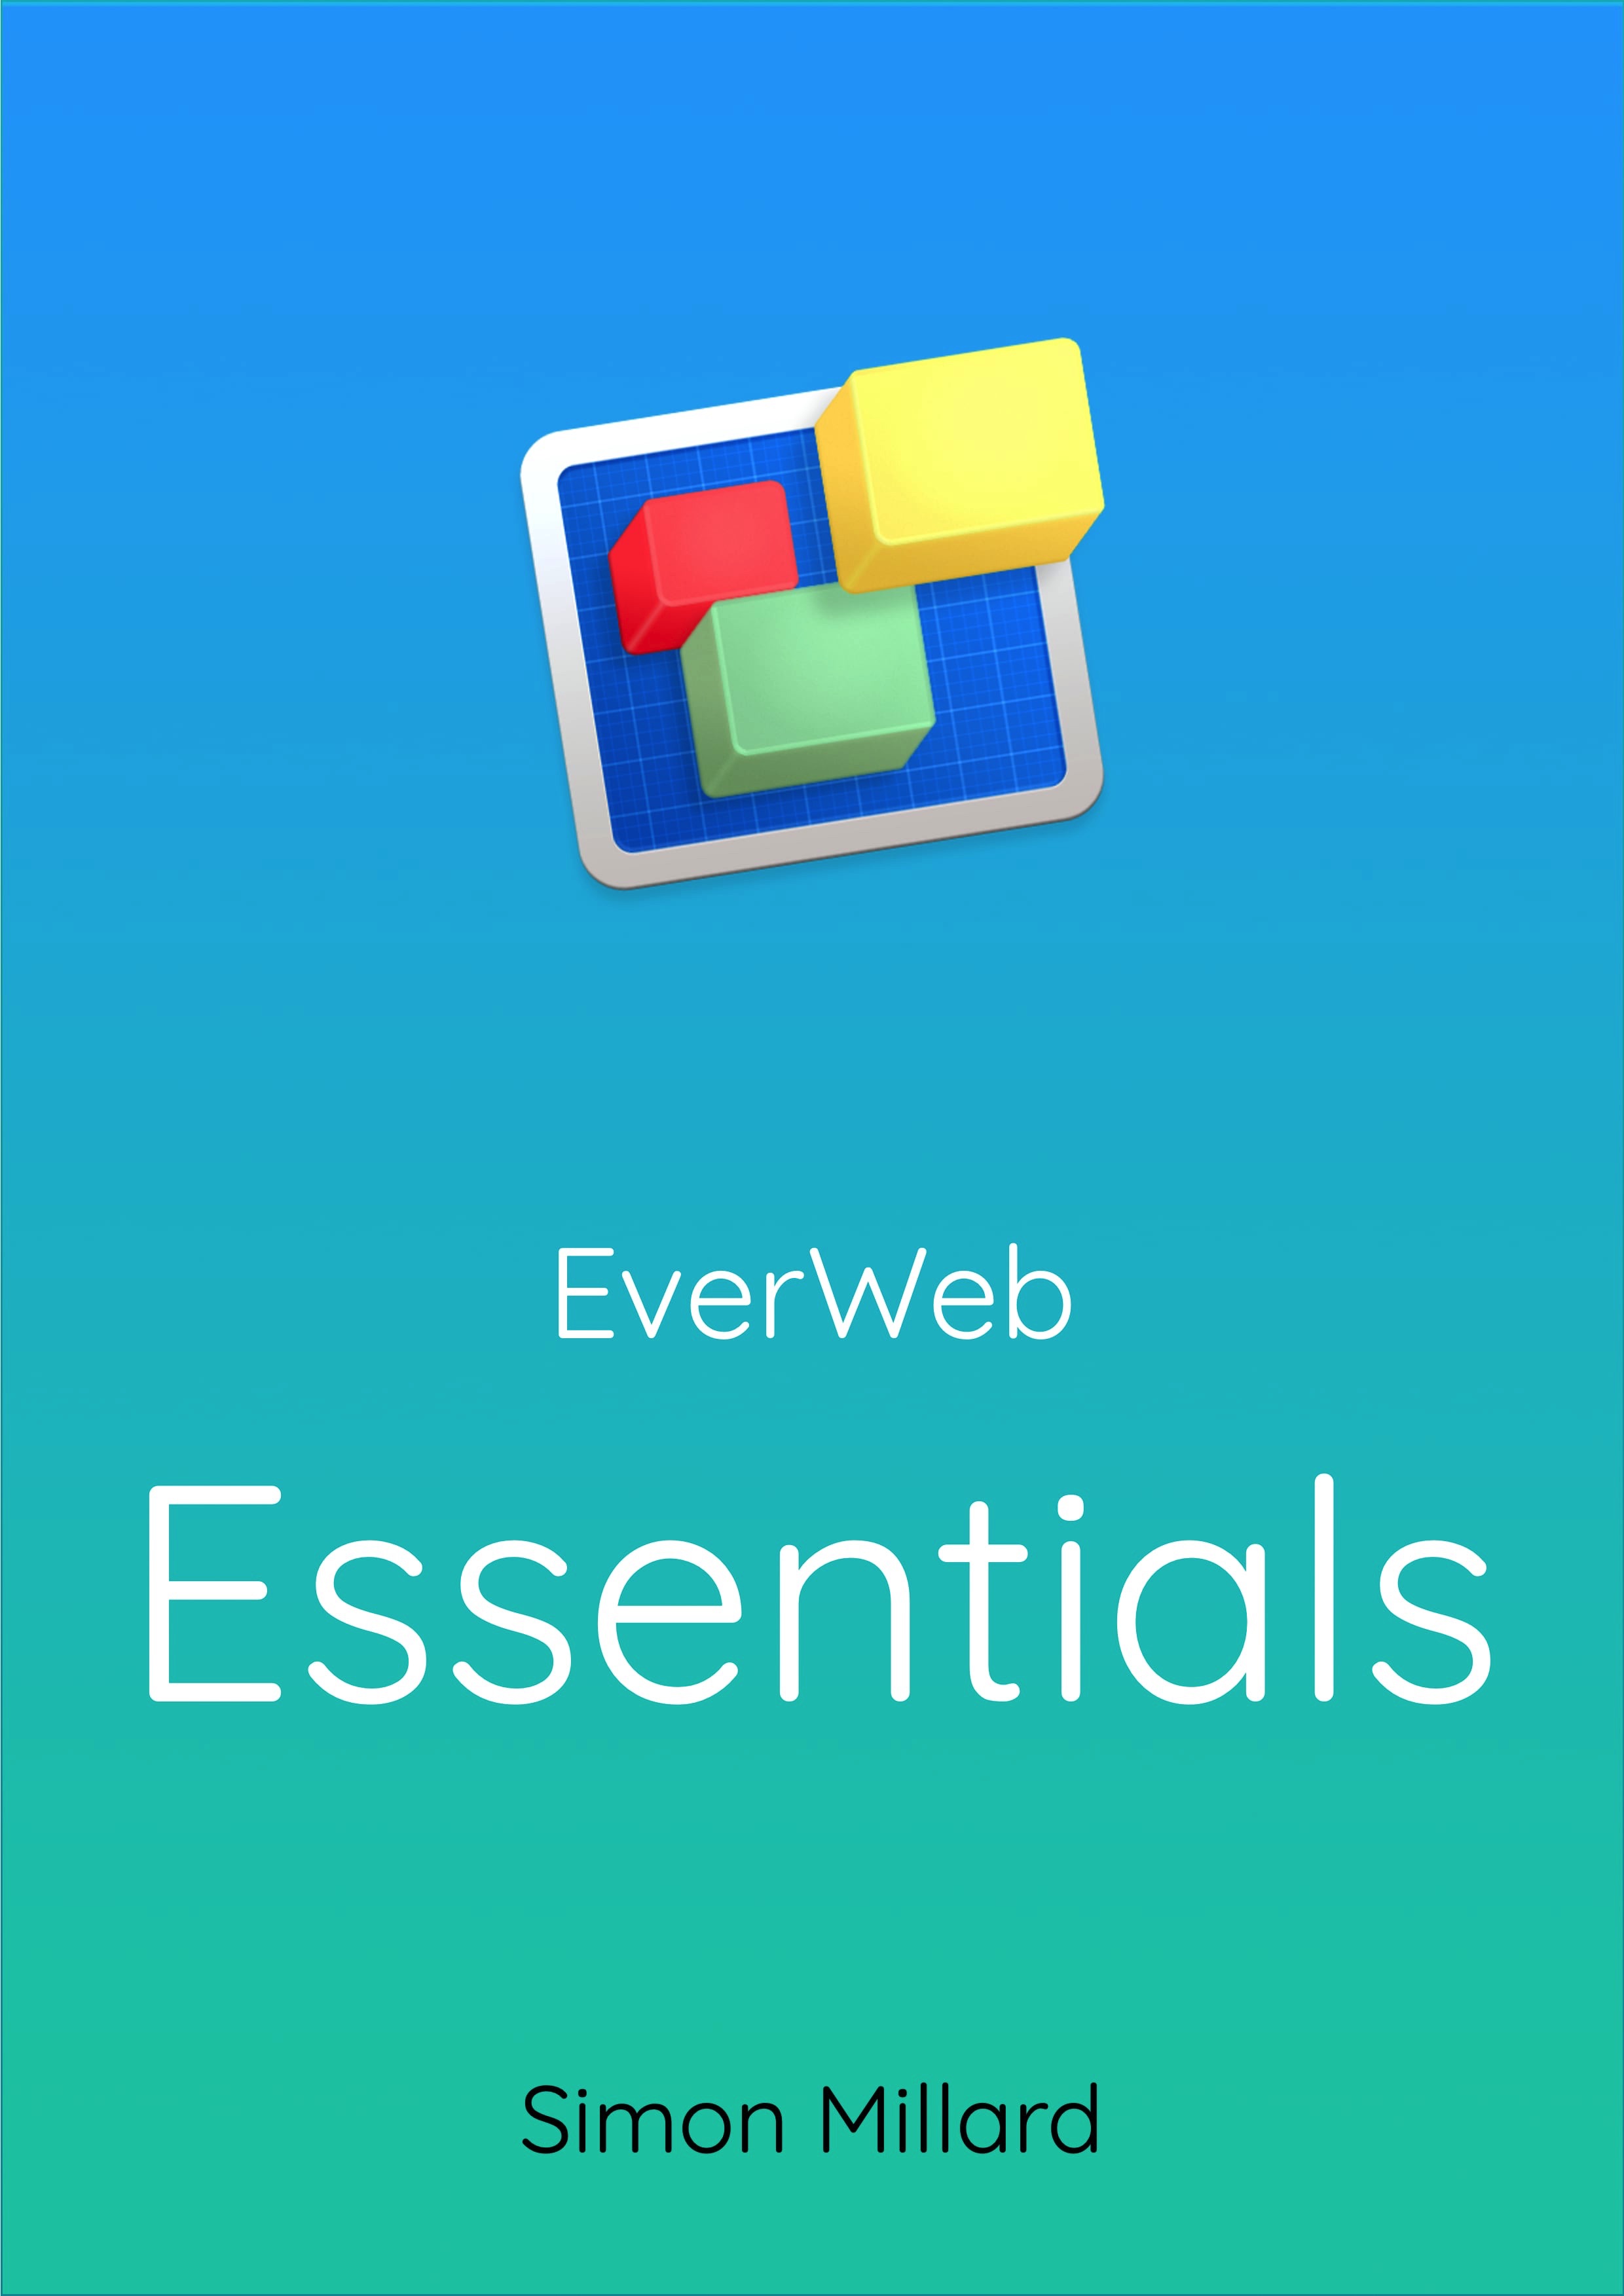 EverWeb Essentiuals are 3rd Party E-Books for EverWeb